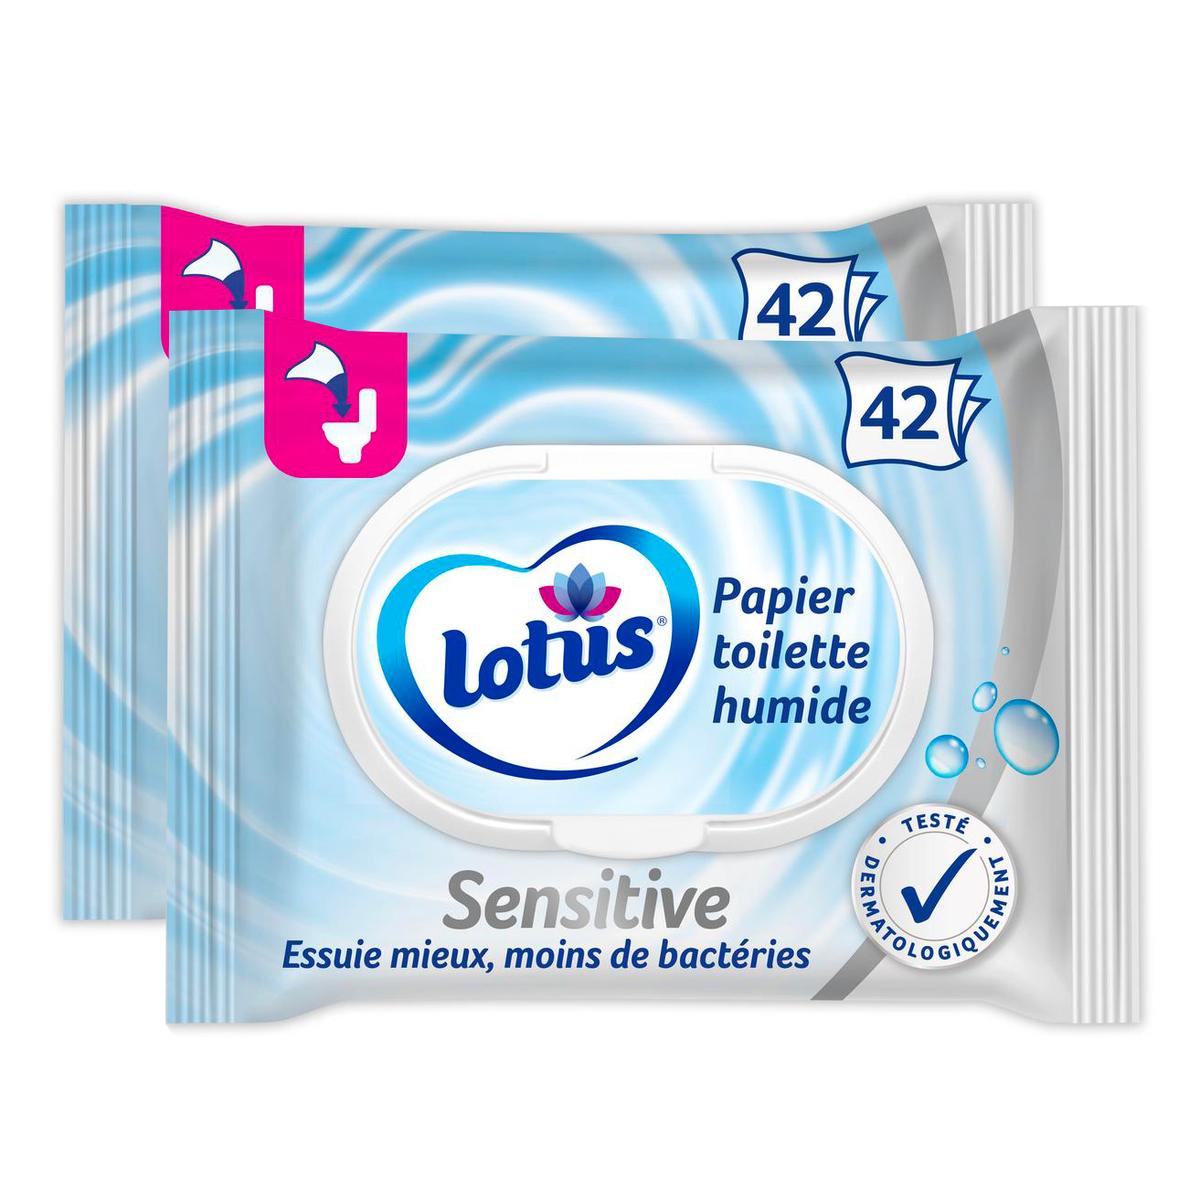 Promotion Lotus Lingette Papier toilette humide Pure, Lot de 2x42